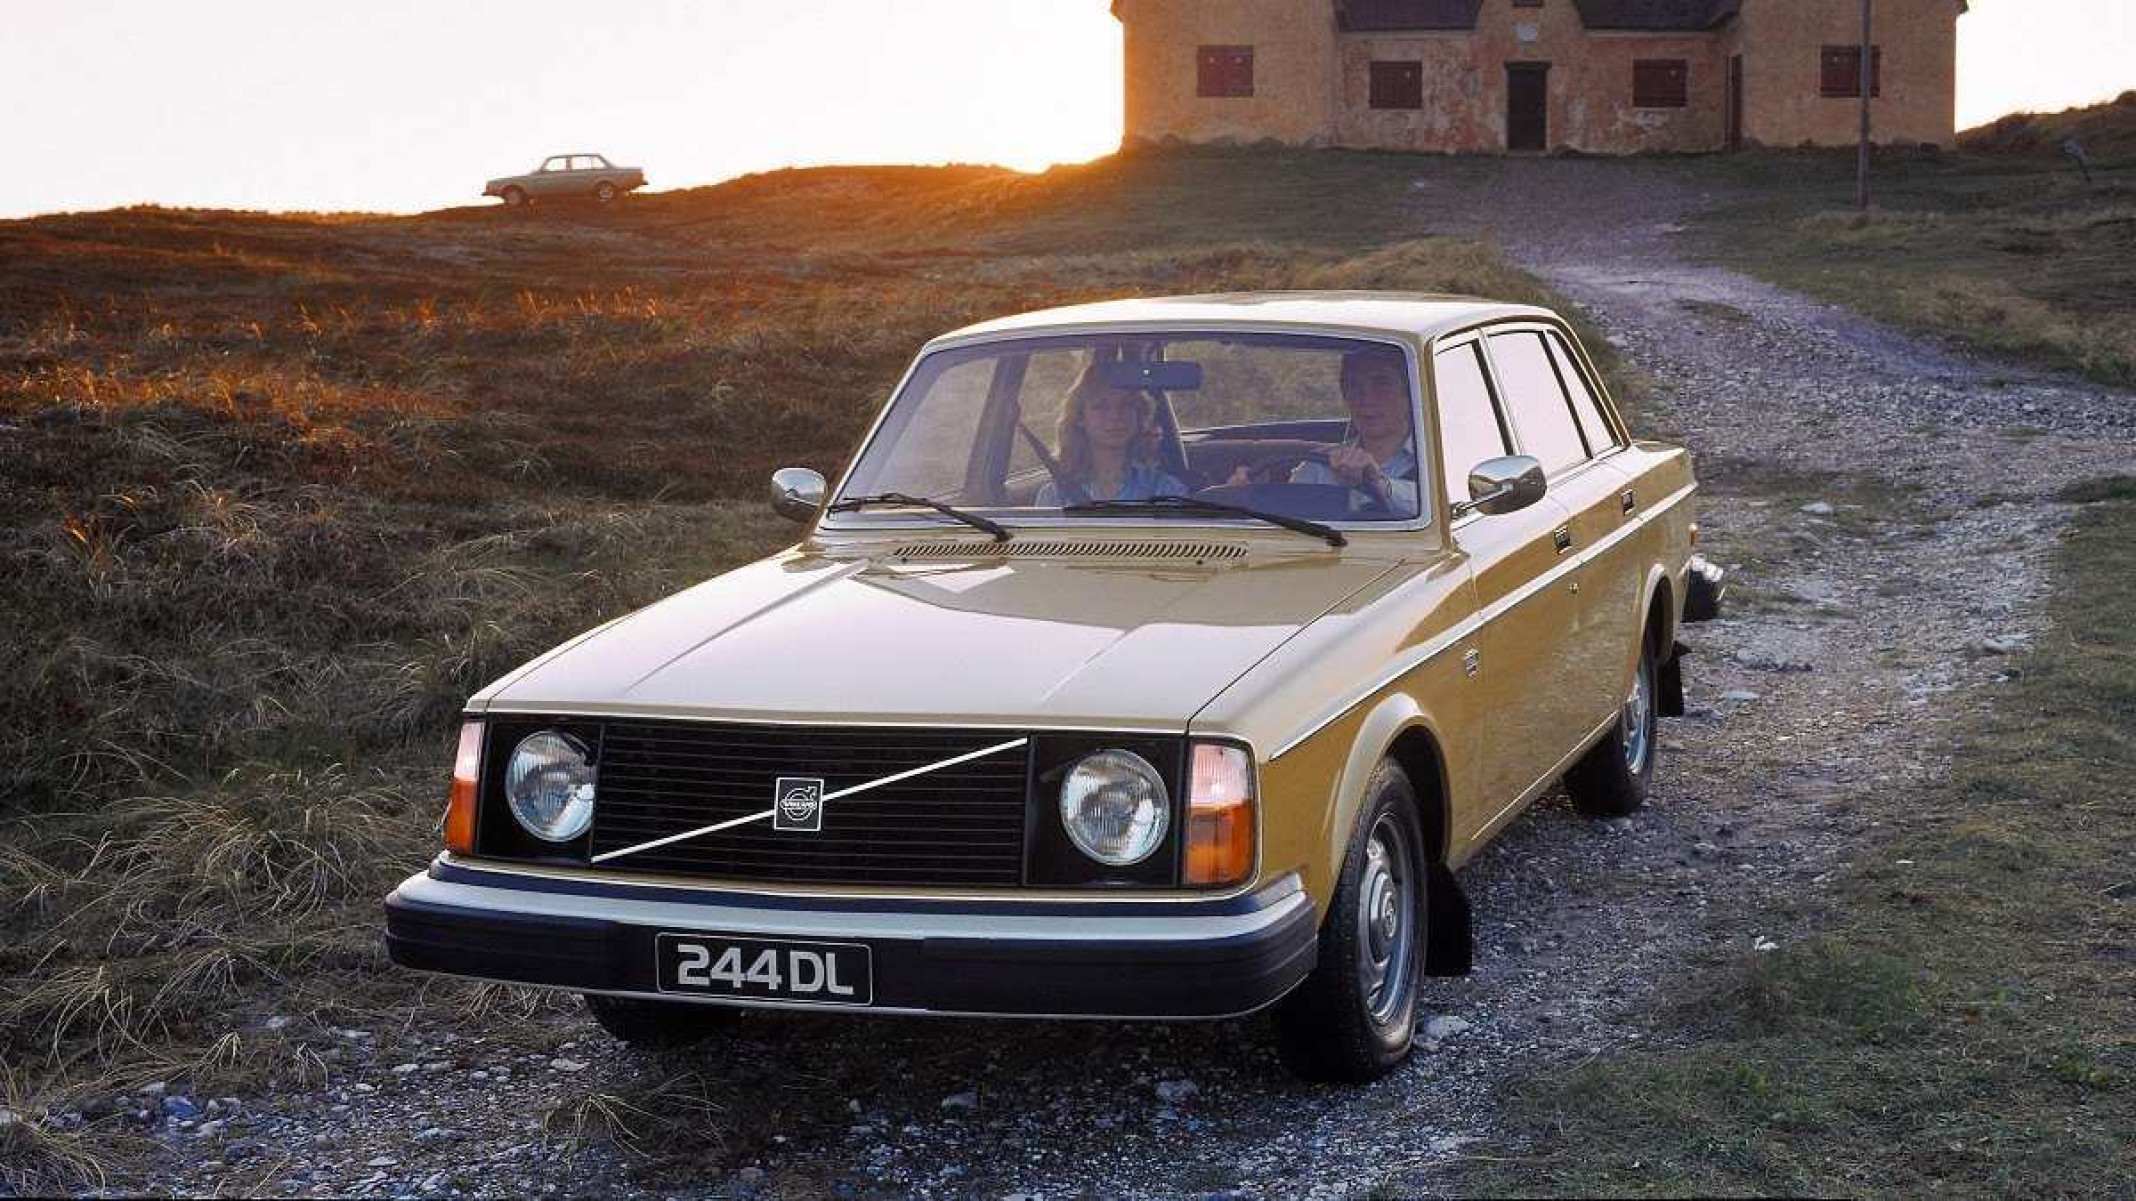 Série Volvo 240 teve 2,8 milhões de unidades vendidas